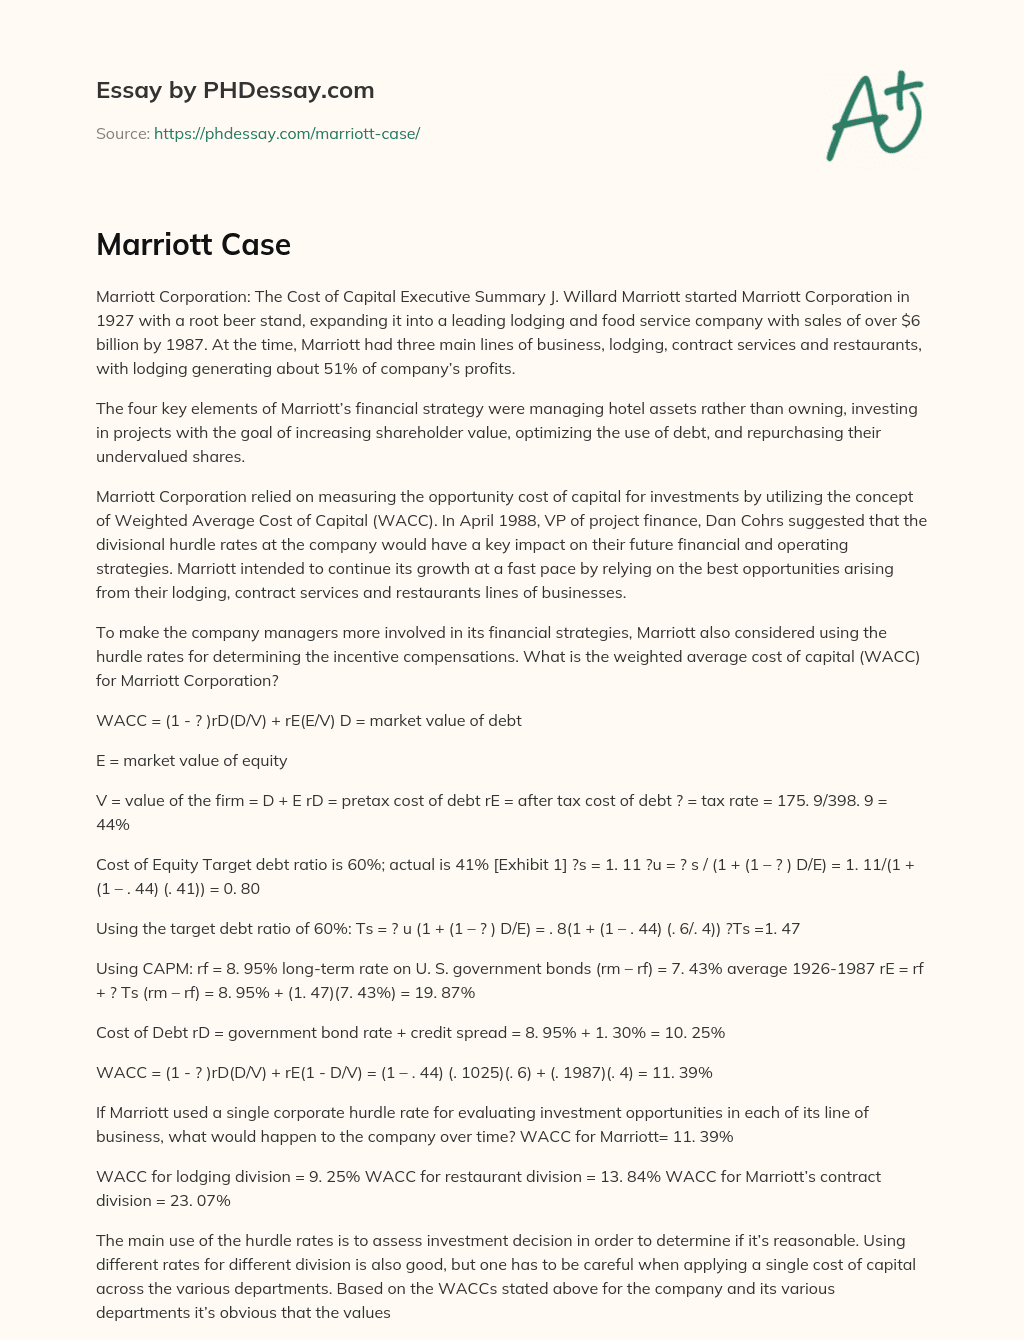 Marriott Case essay